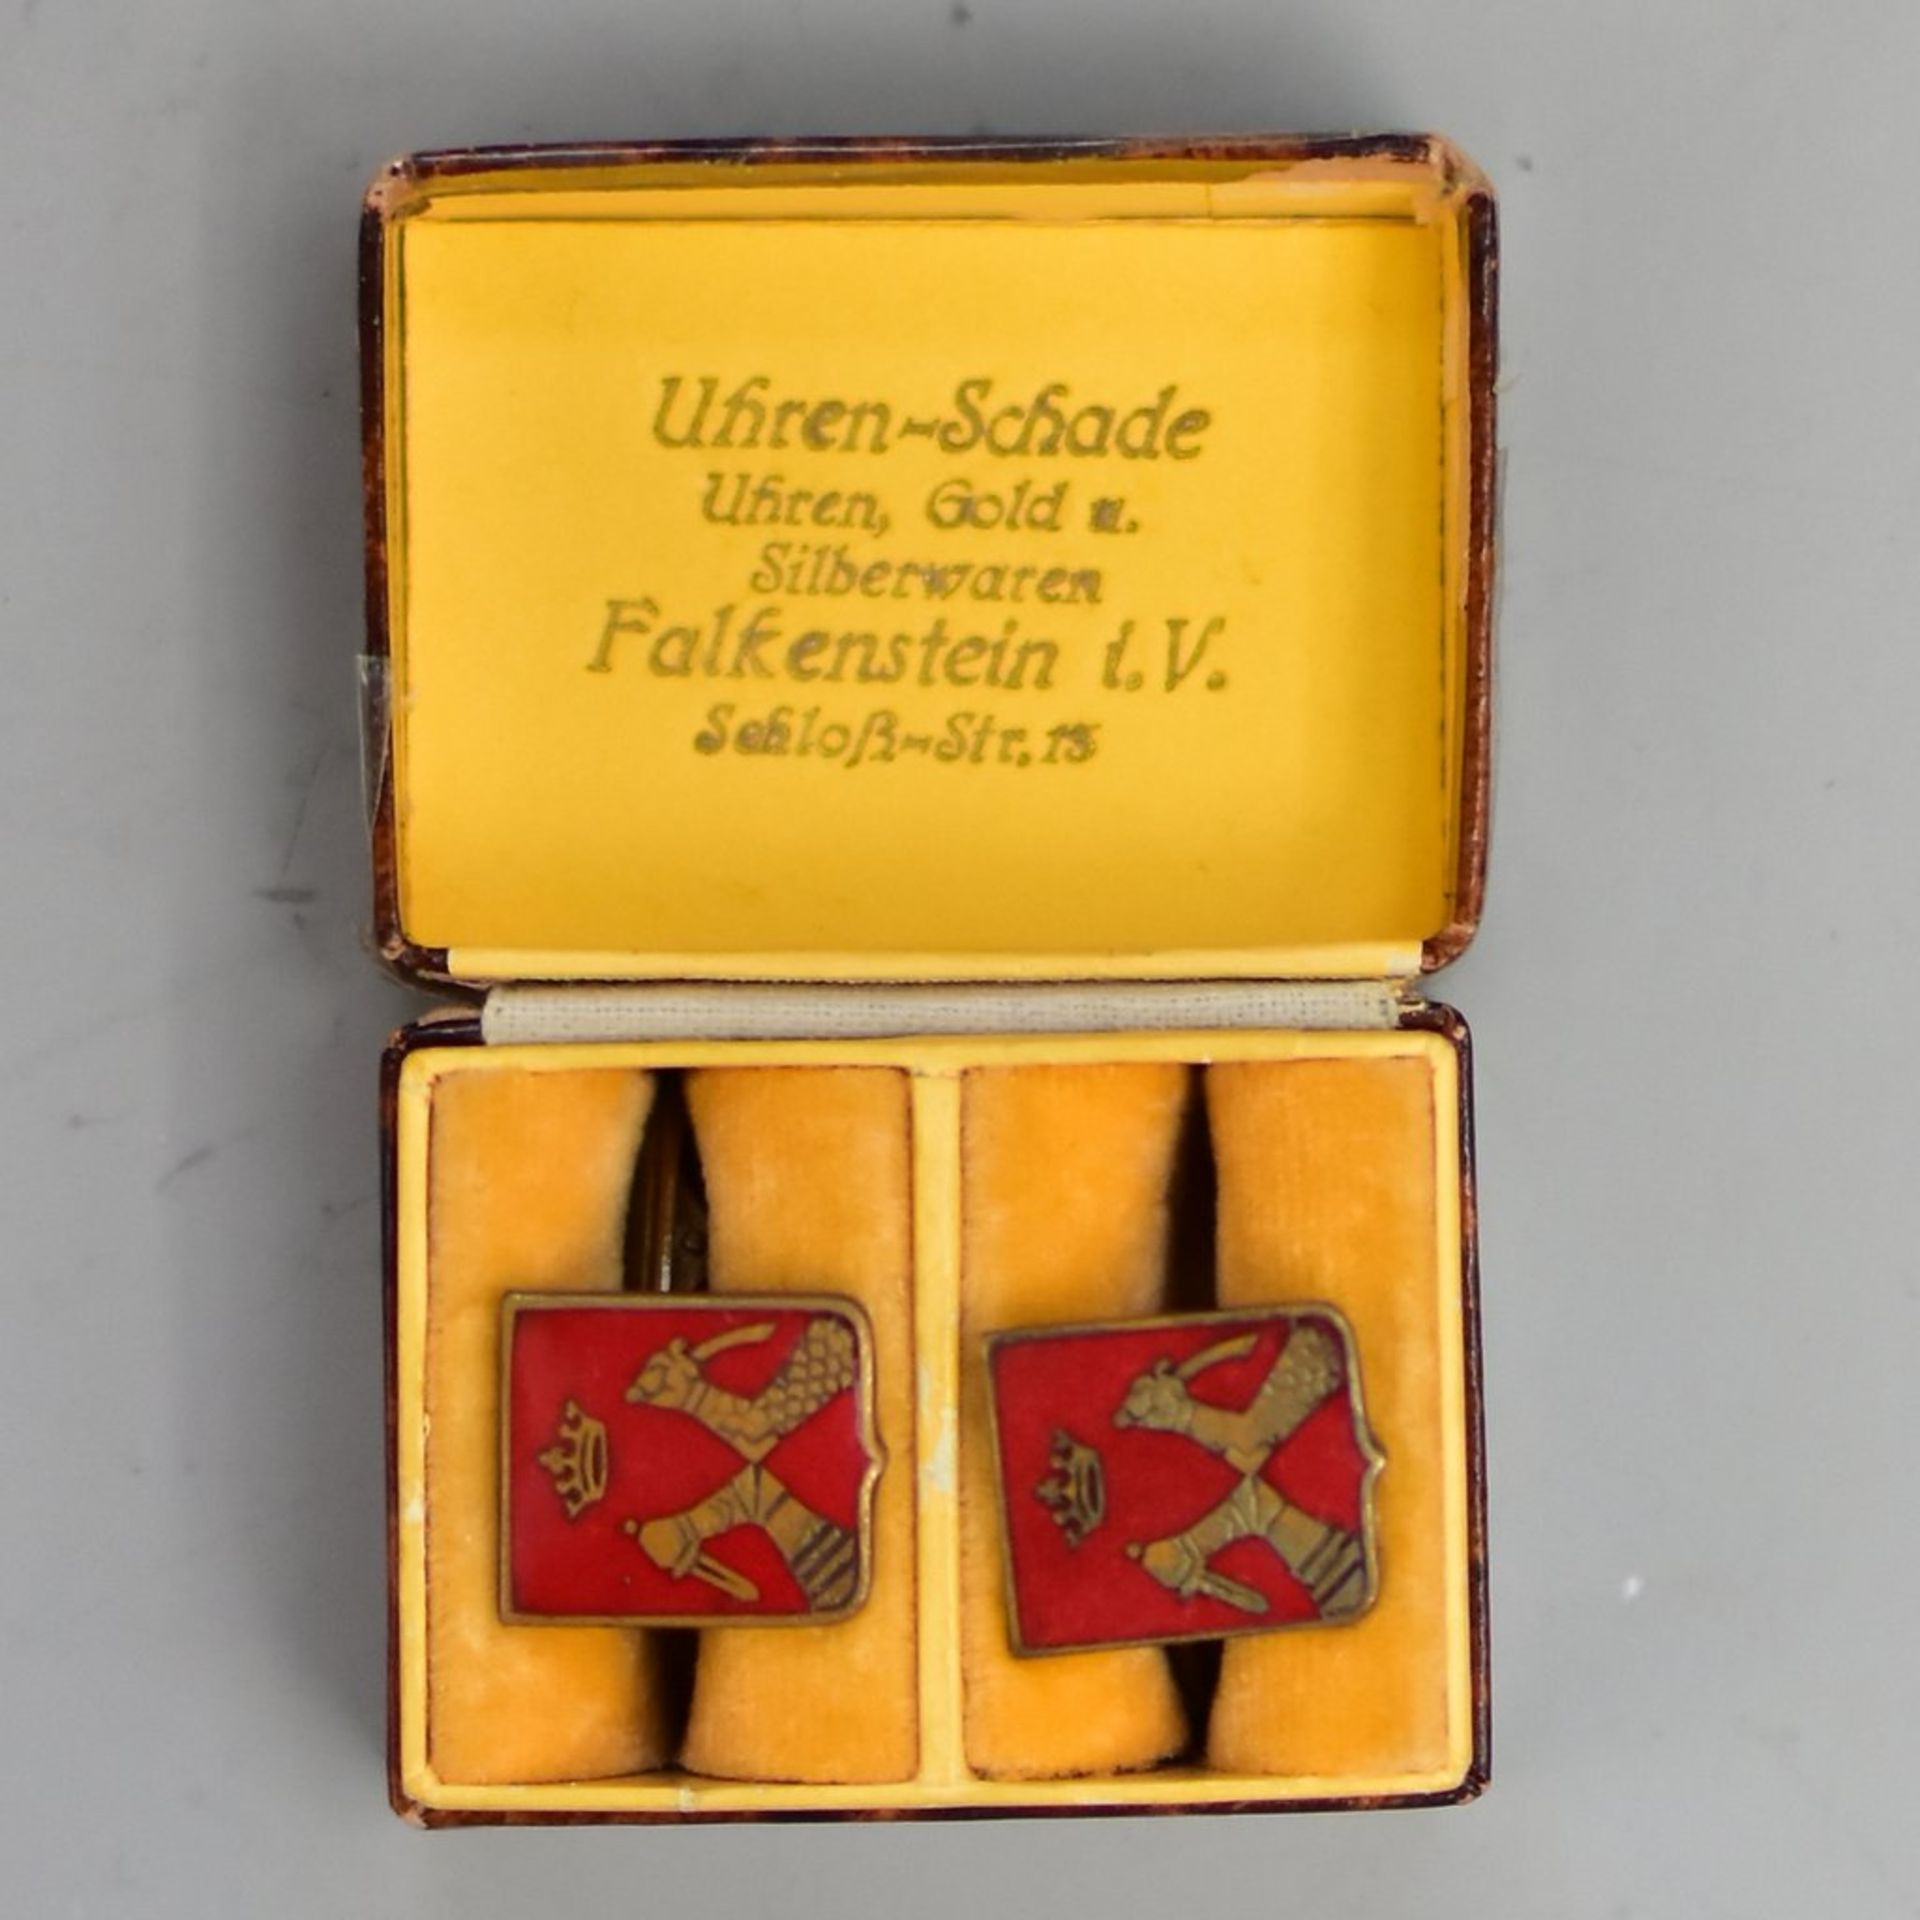 Manschettenknöpfe, 2. WK, mit Wappen von Nordkarelien (Finnland), emailliert, guter Zustand, gemarkt